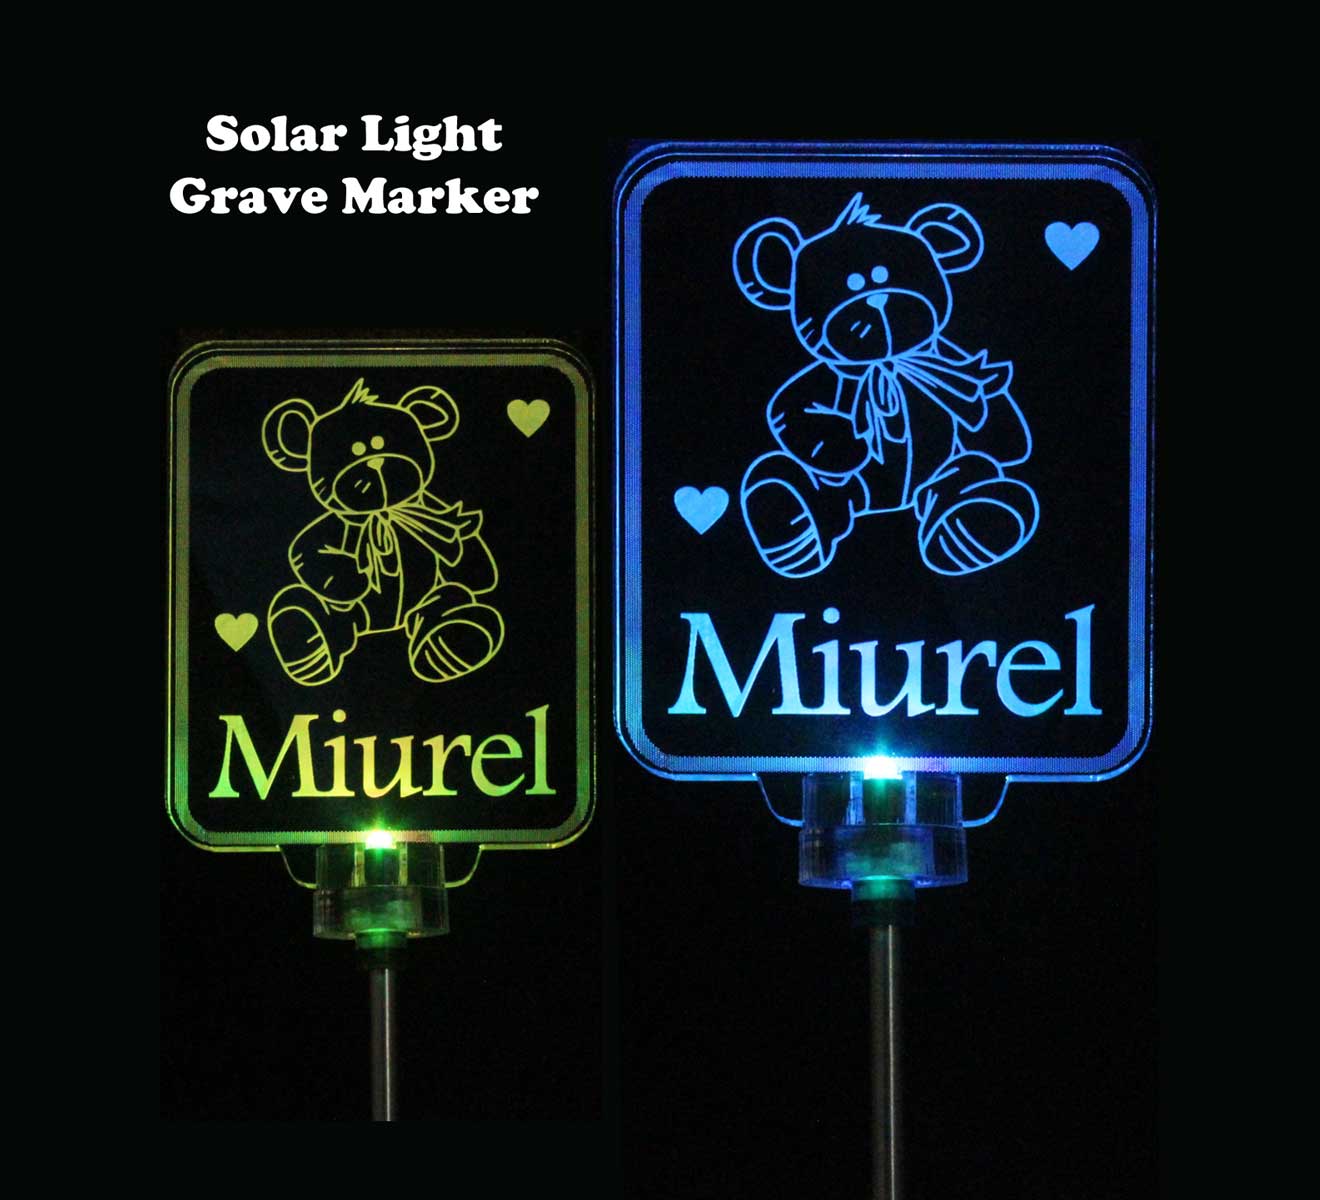 Personalized Teddy Bear Solar Light, Grave Marker, Garden Light, Memorial Gift